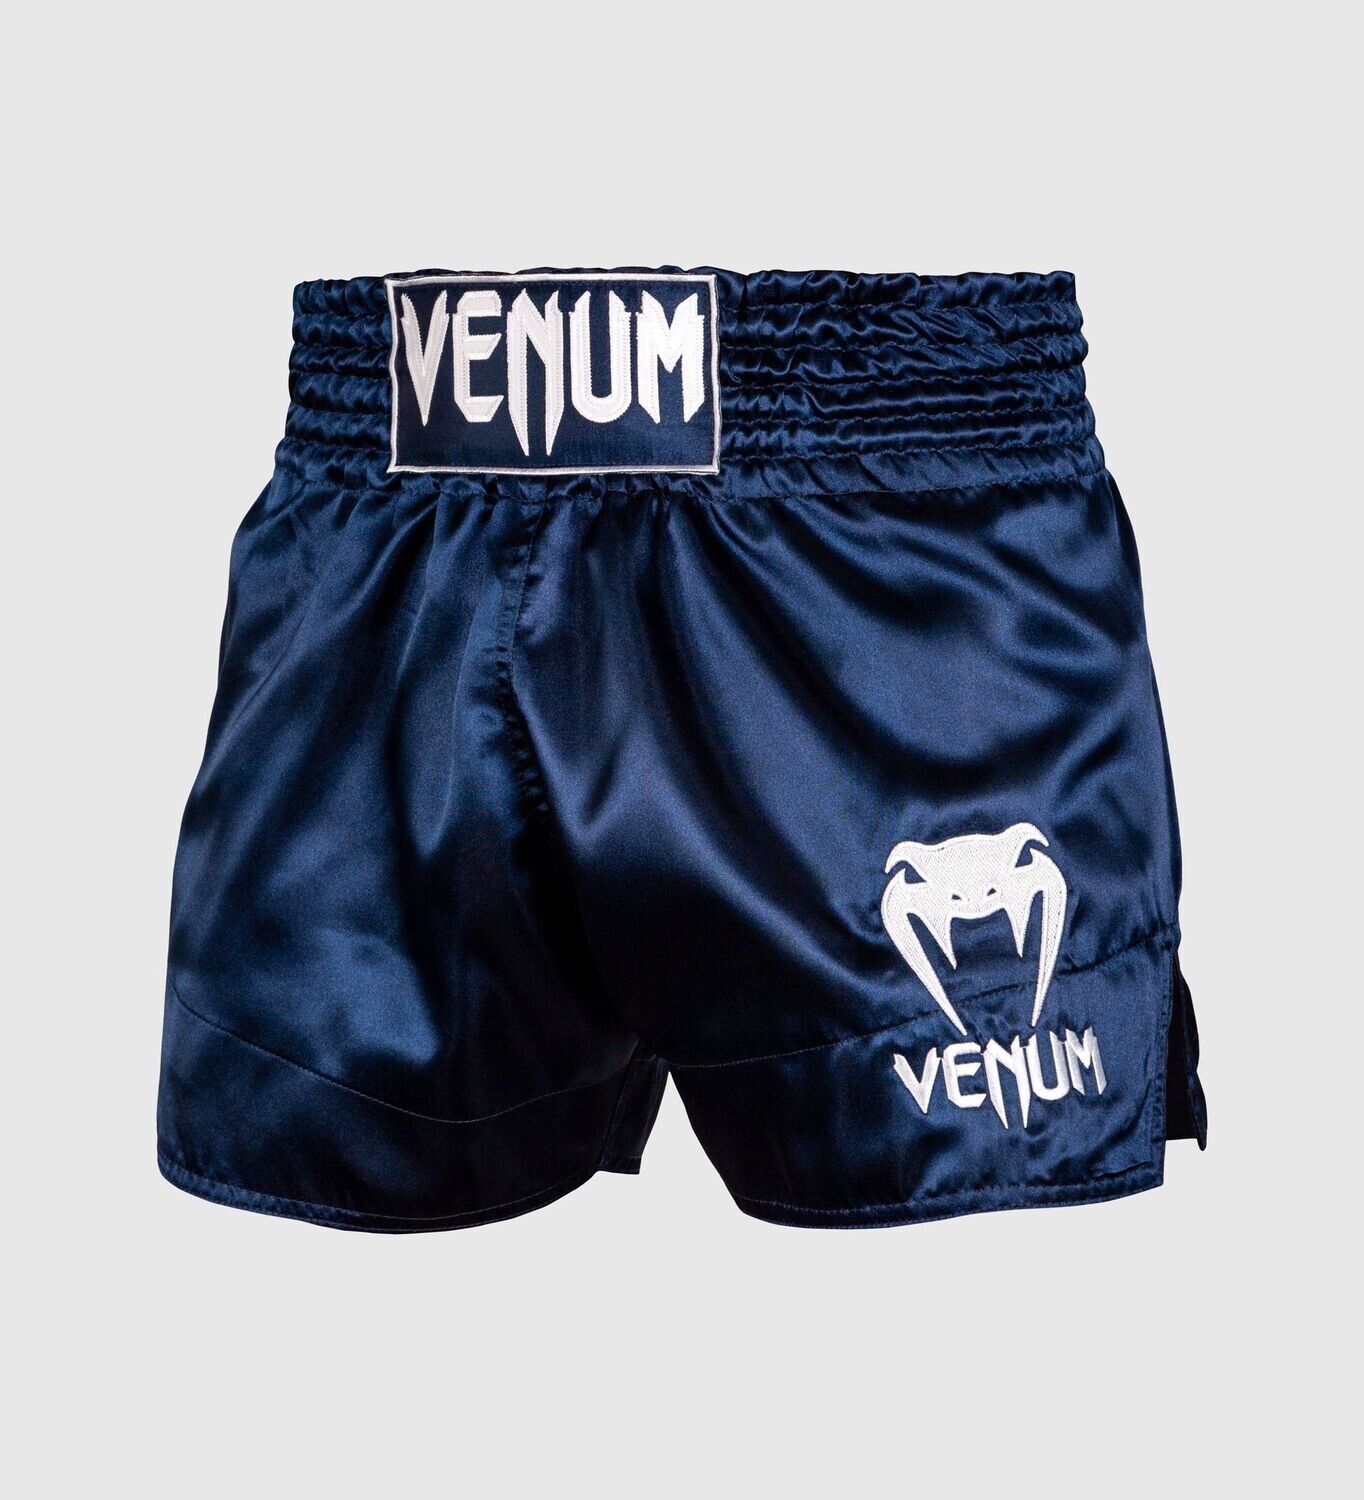 Venum Muay Thai Shorts Classic Navy Blau/Weiß, Größe: S